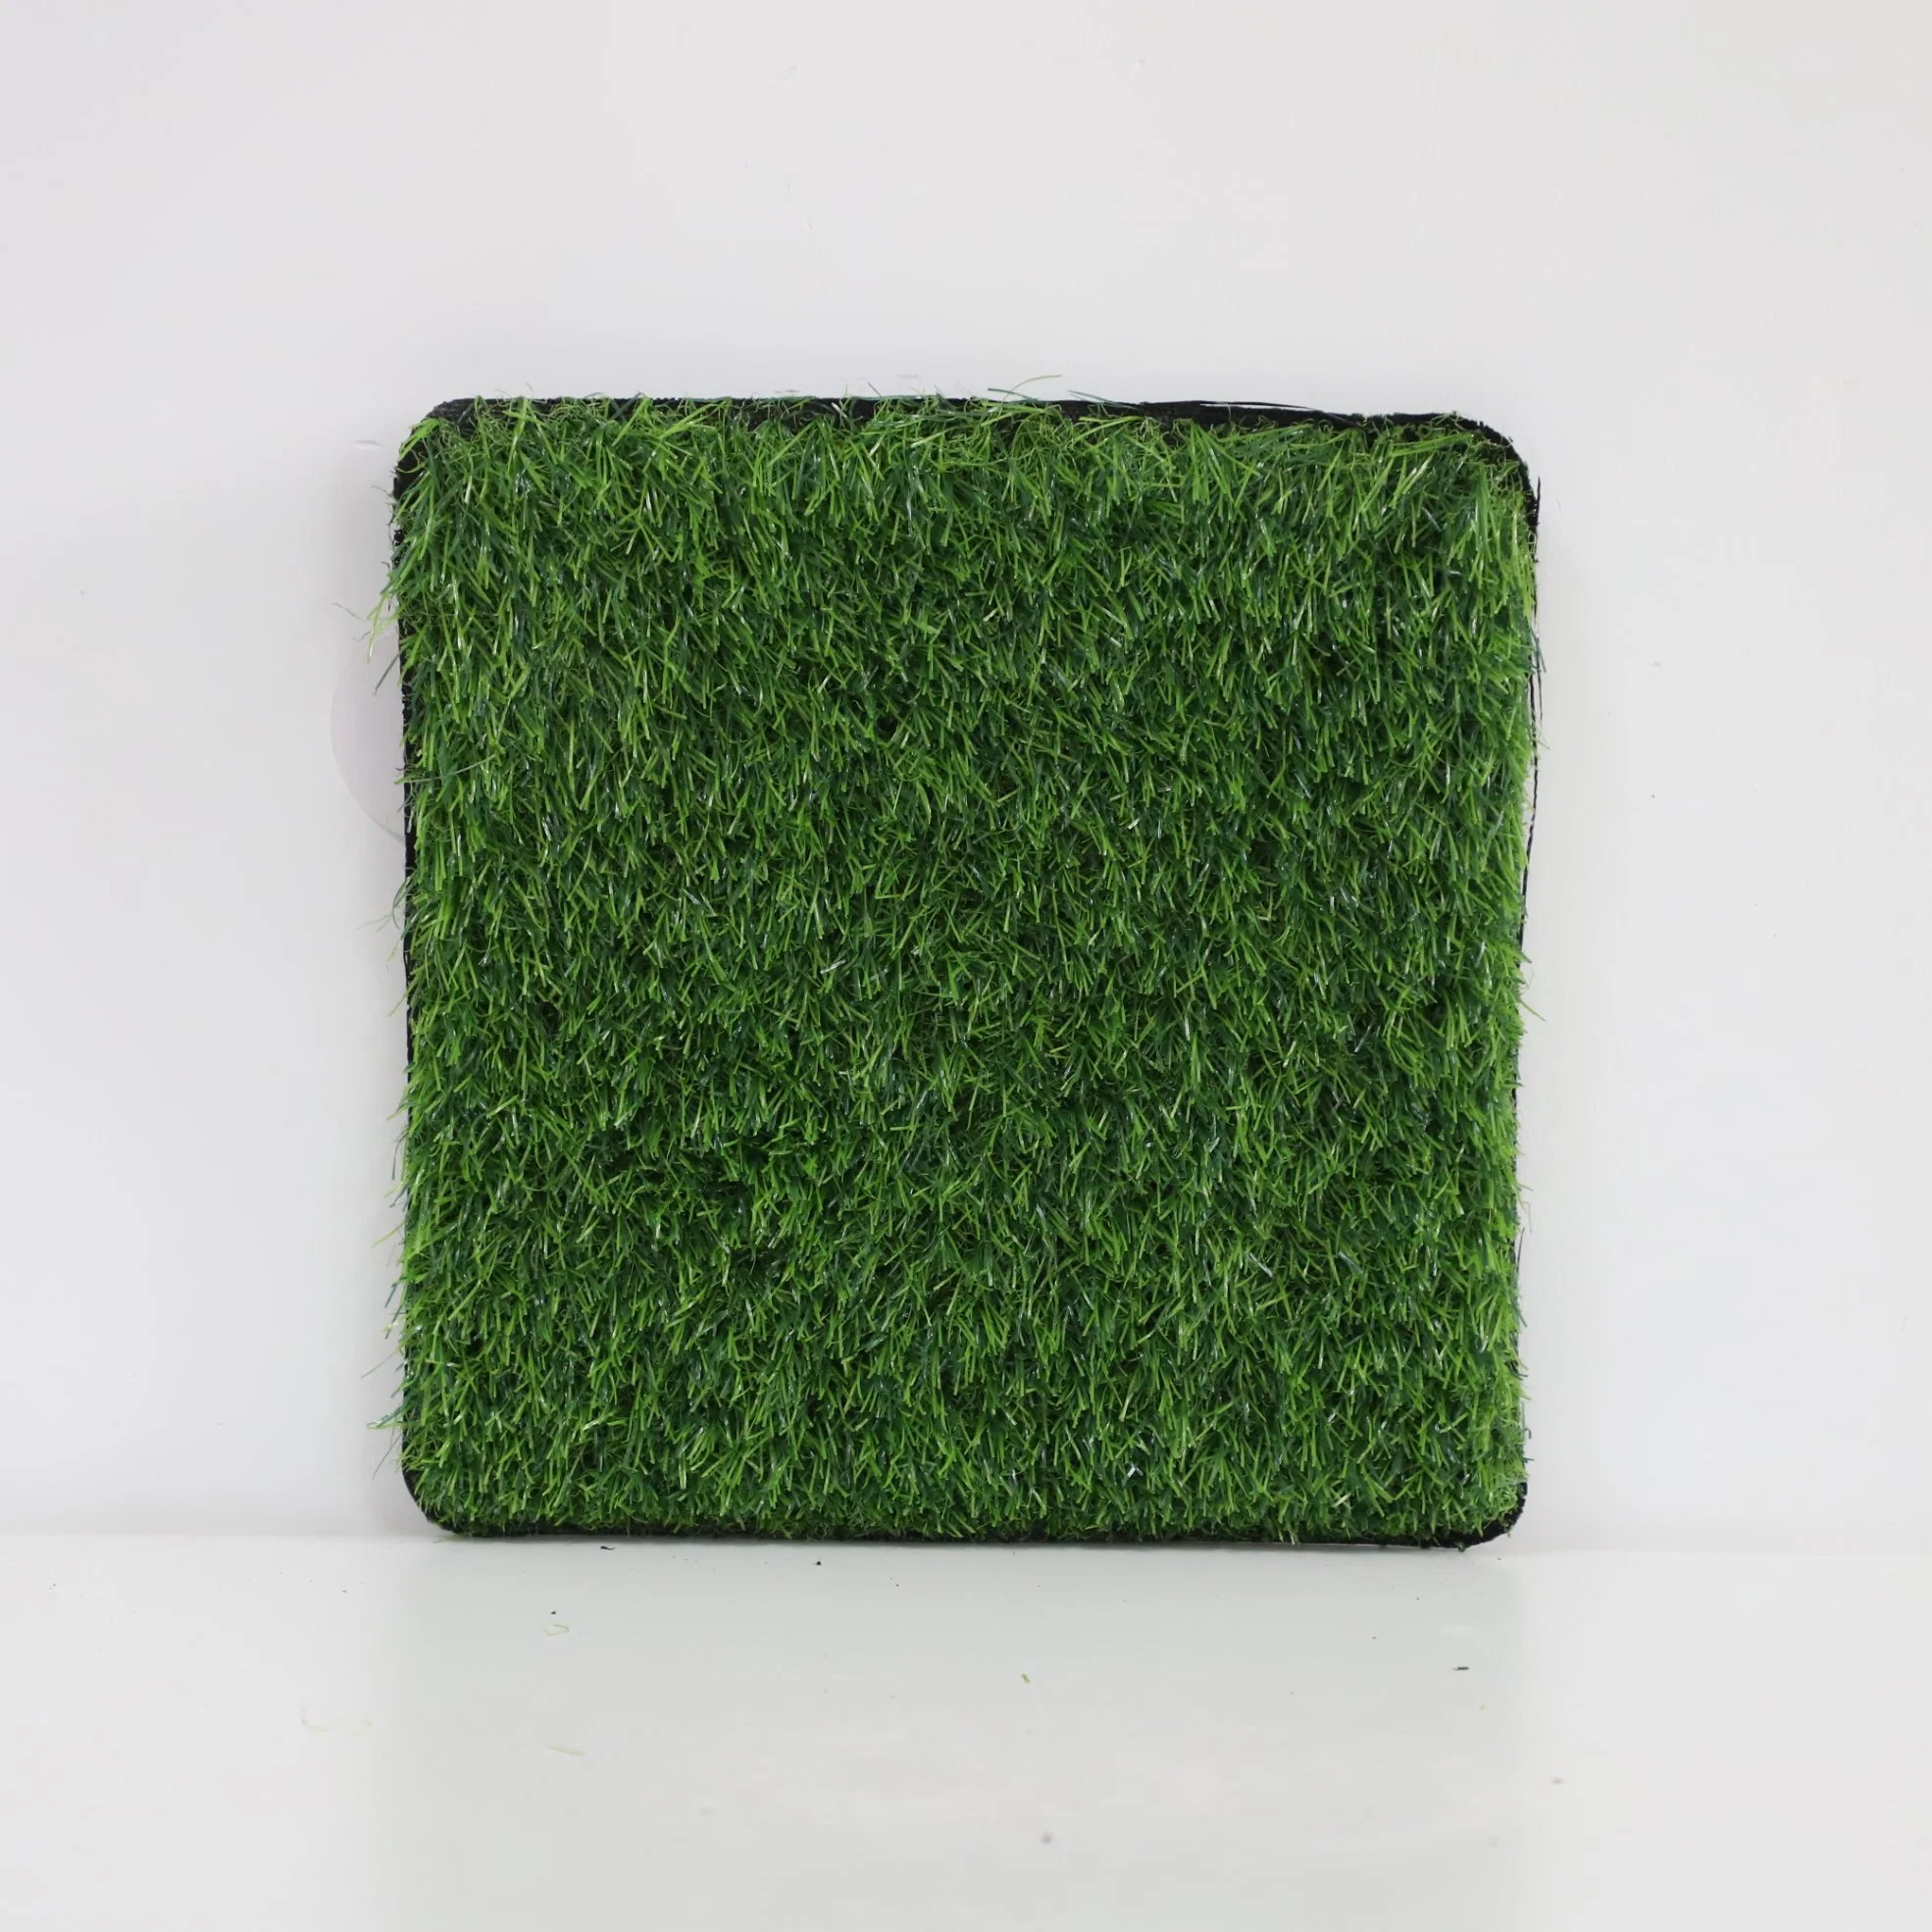 Wholesale Synthetic Grass Footbal Artificial Grass Turf Grass Synthetic Fake Grass Mat Carpet for Garden